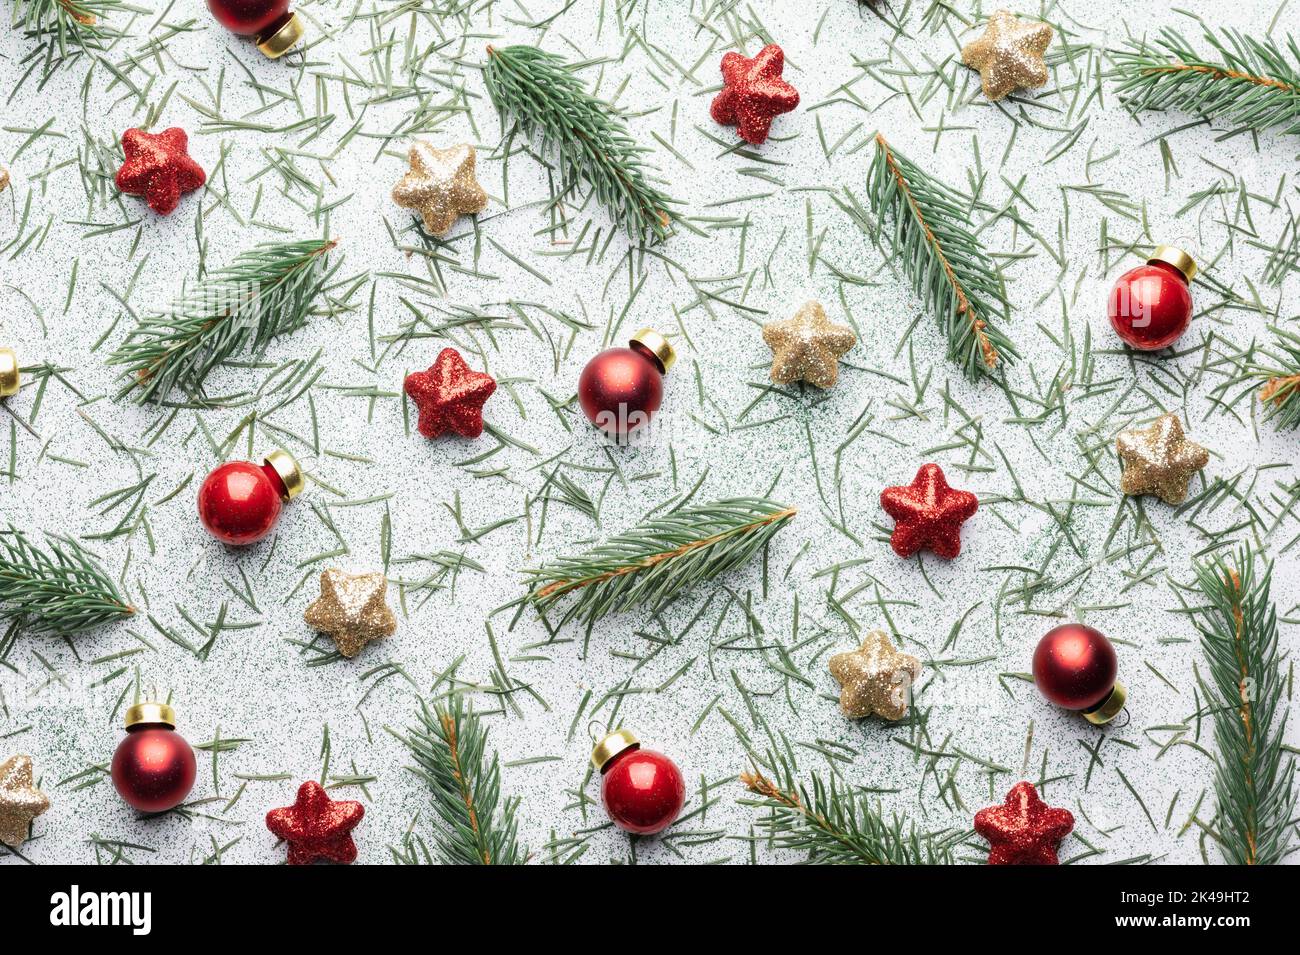 Fond de Noël créatif avec boules de Noël, brindilles de pin, décorations étoiles rouges et dorées sur fond blanc.Flat lay, vue de dessus, espace de copie Banque D'Images